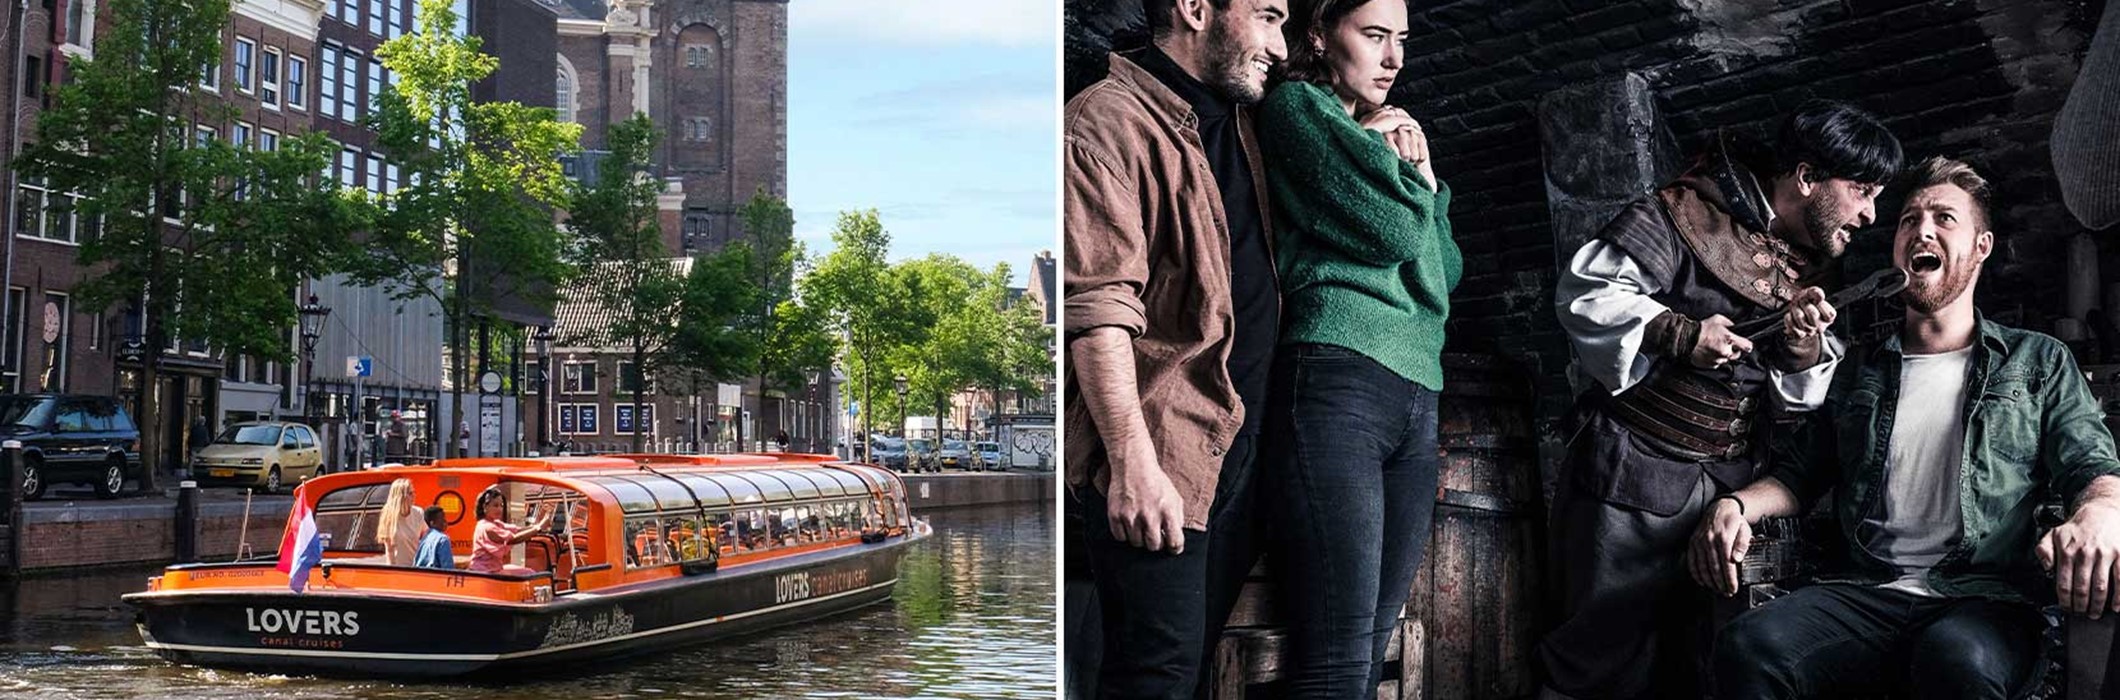 The Amsterdam Dungeon + Croisière sur les canaux d'Amsterdam